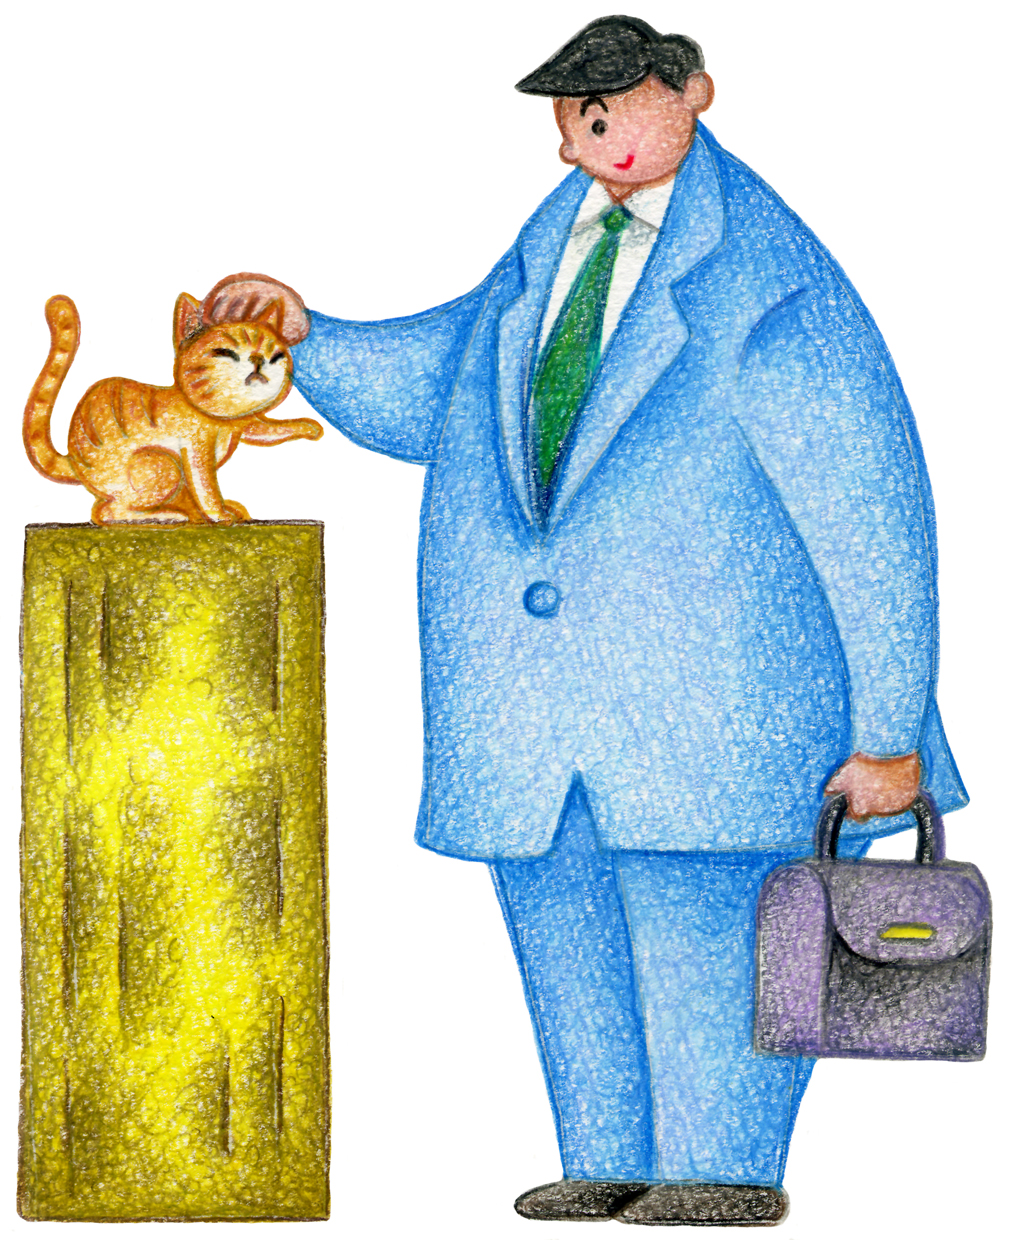 「タグ」 アナログ,手描き,色鉛筆画,鉛筆画,猫,子猫,キャット,男性,ビジネスマン,サラリーマン,会社員,捨て猫,野良猫